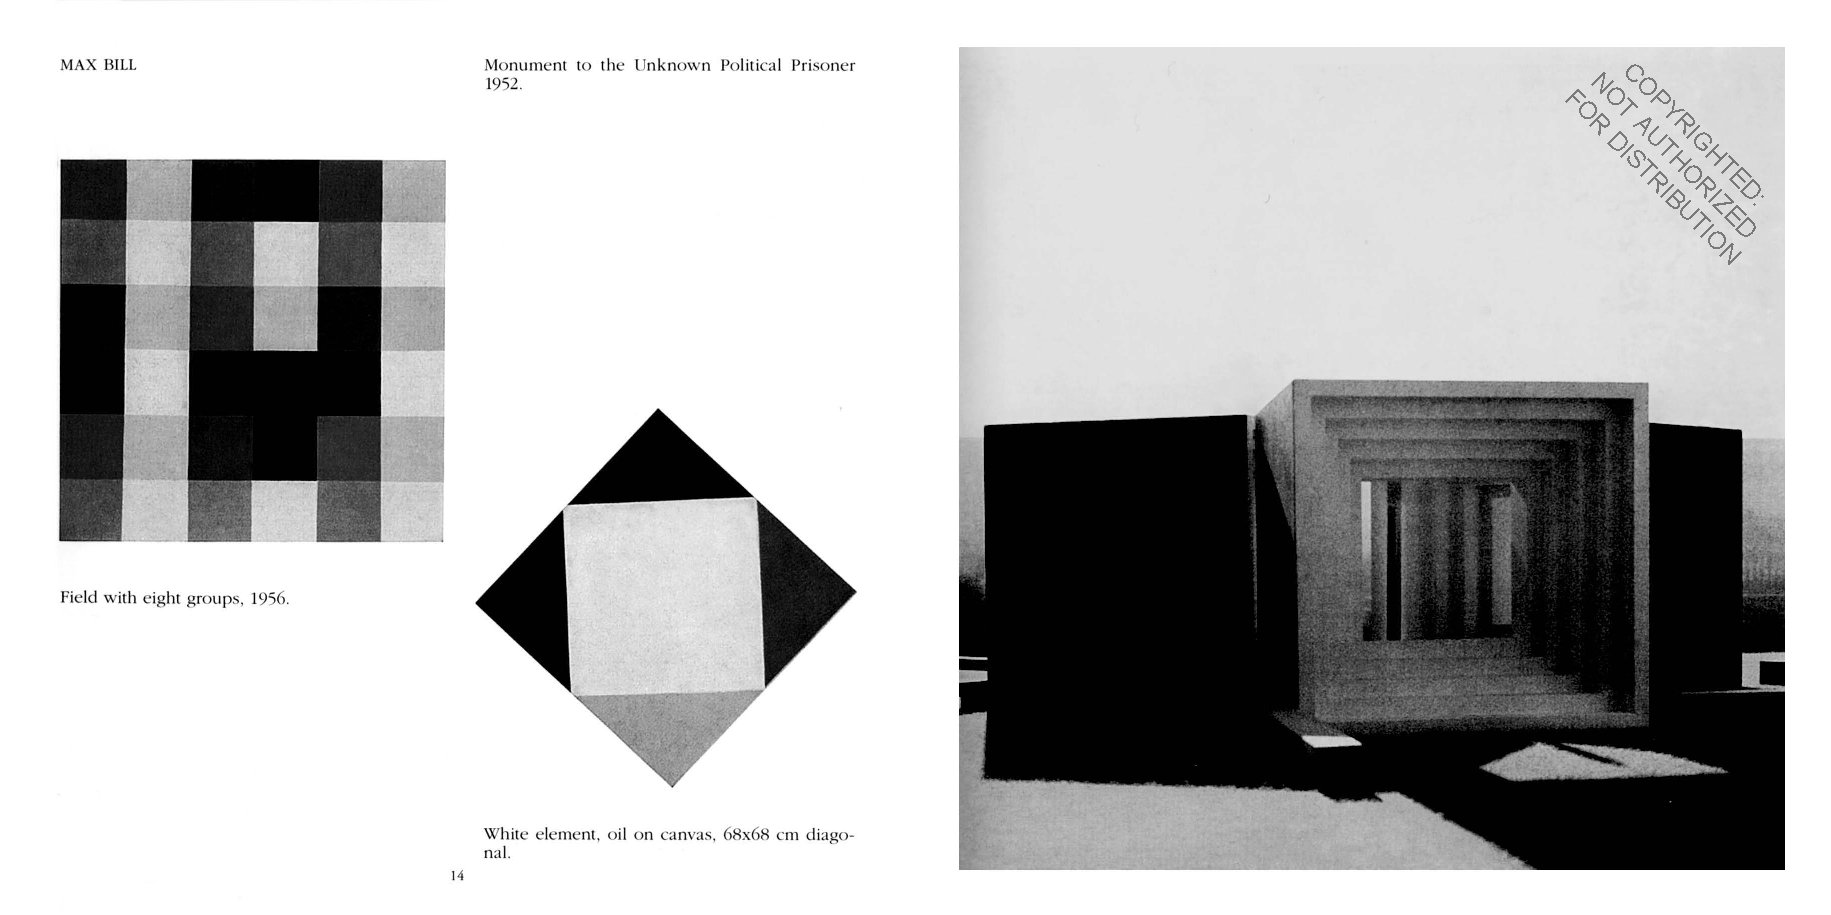 Bruno Munari: Square, Circle, Triangle